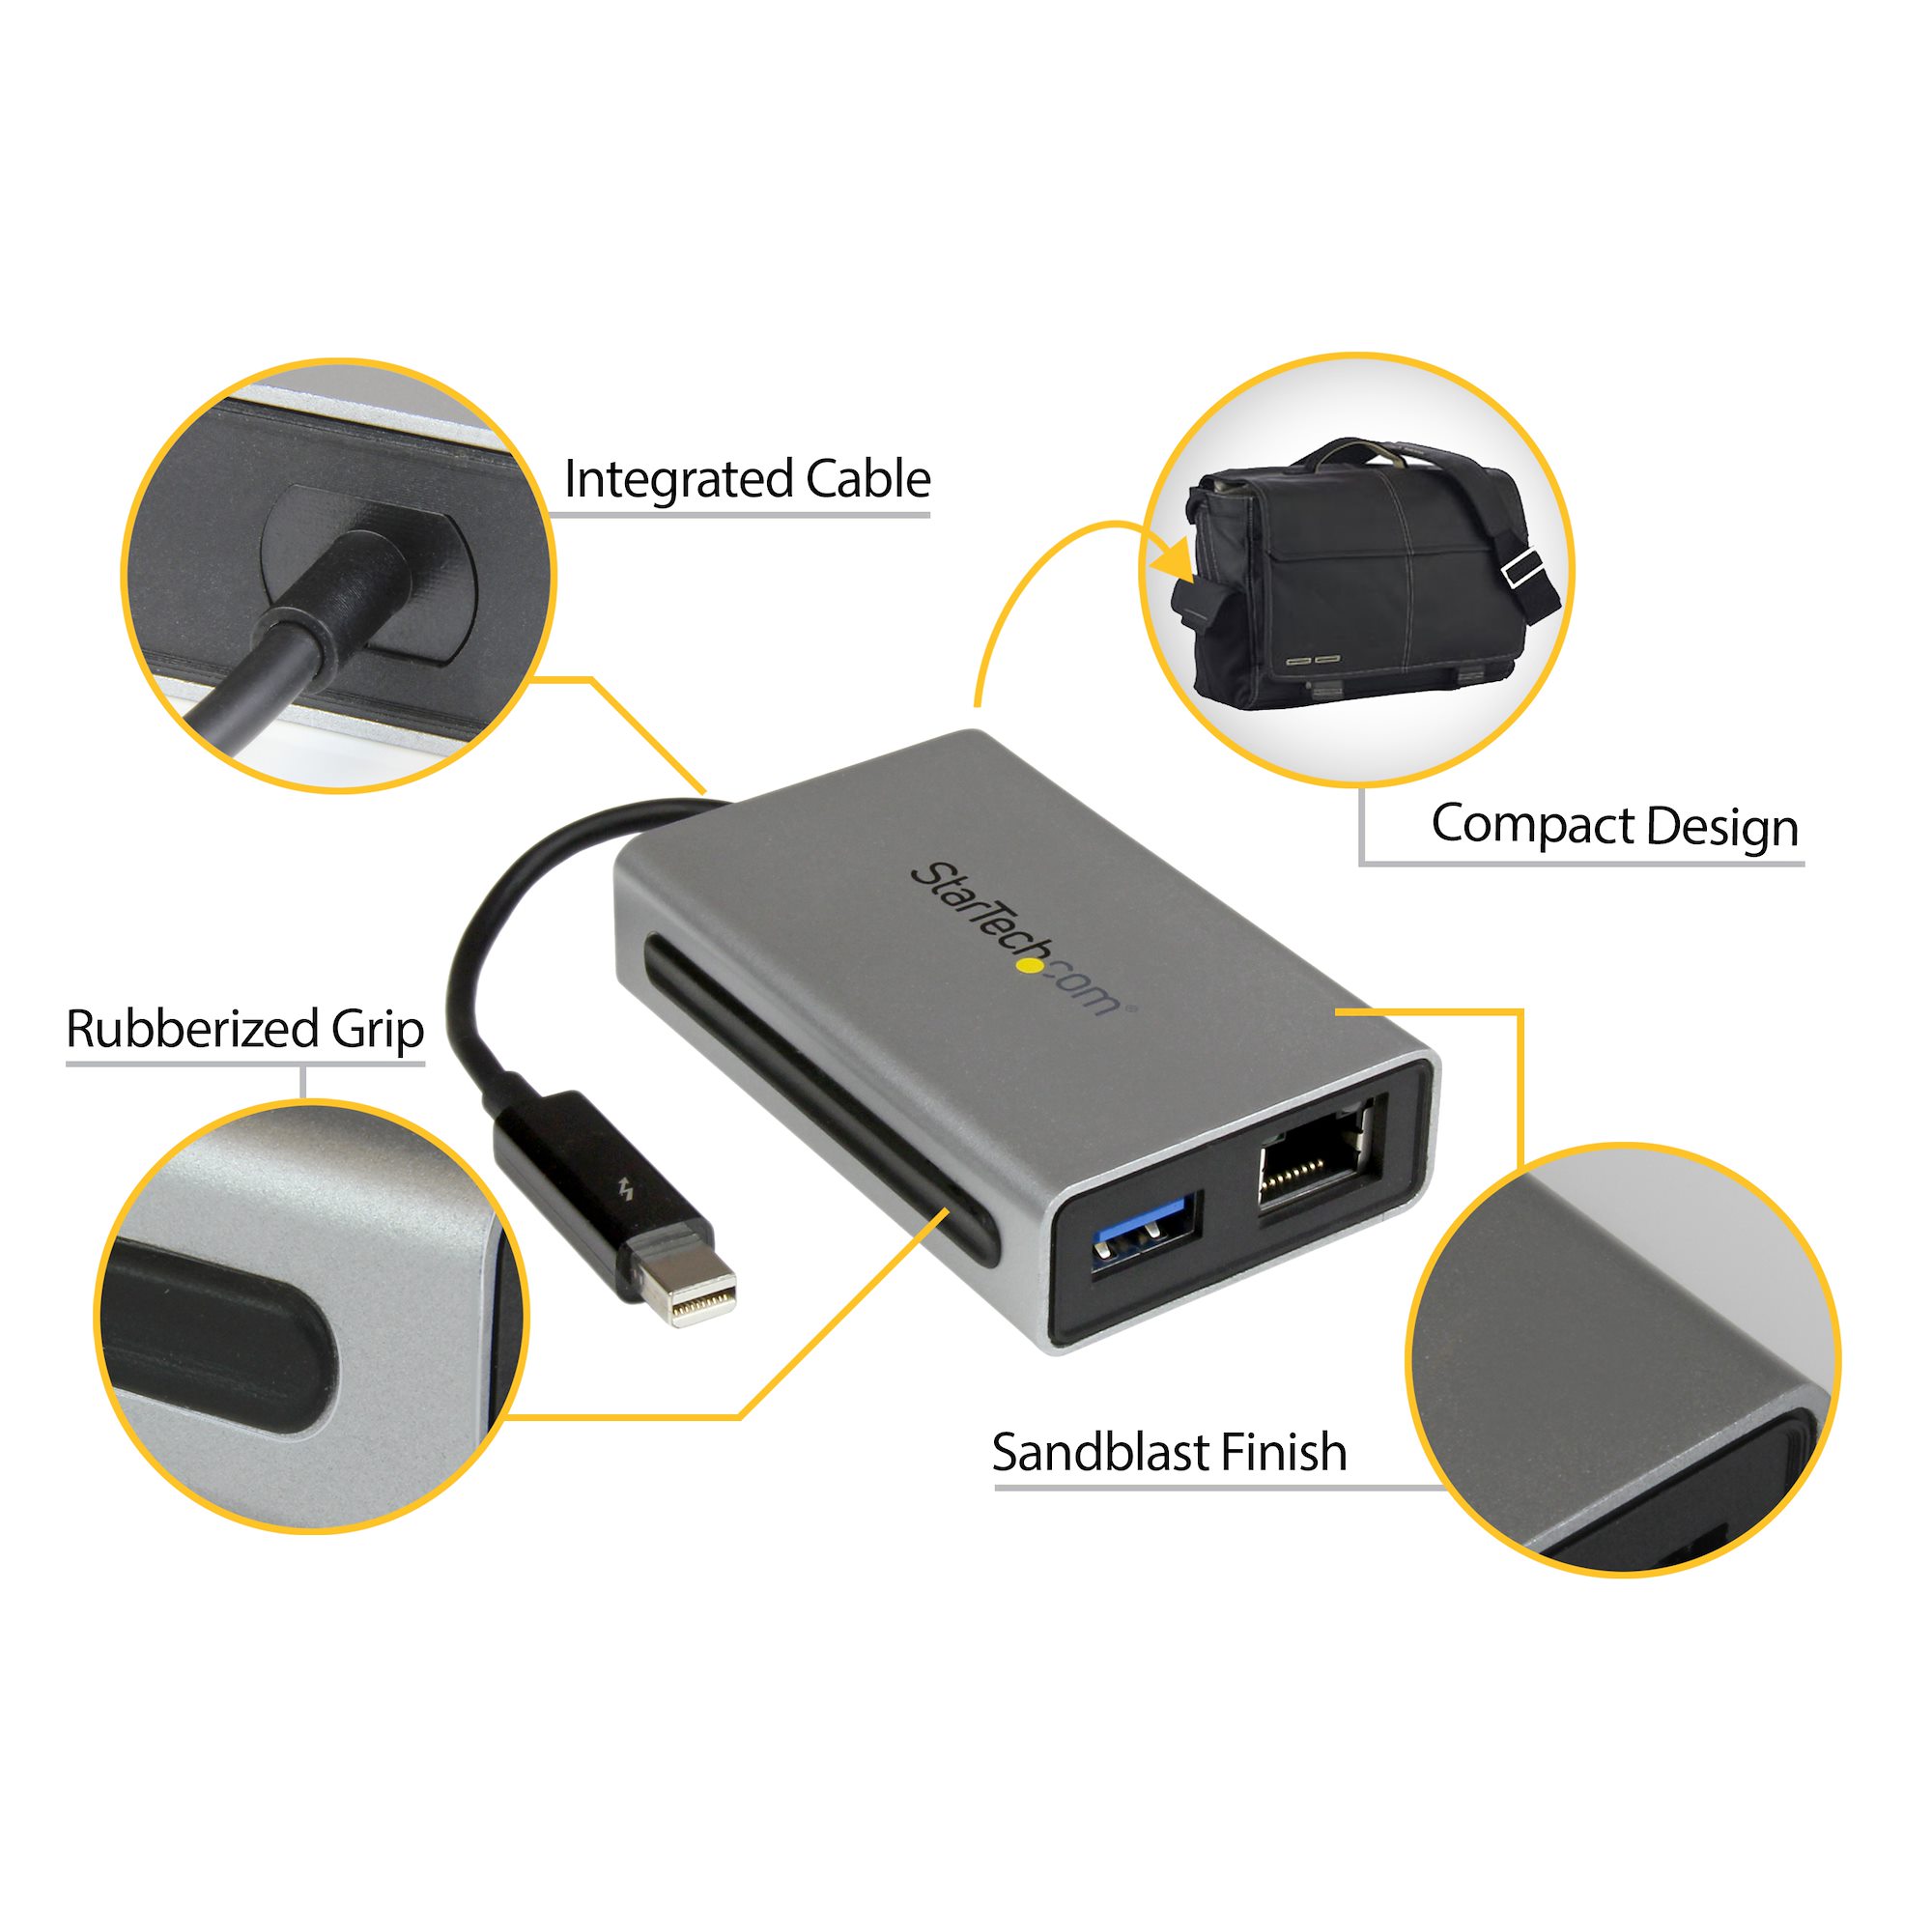 Thunderbolt - ギガビットEthernet変換アダプタ 1x USB 3.0ポート